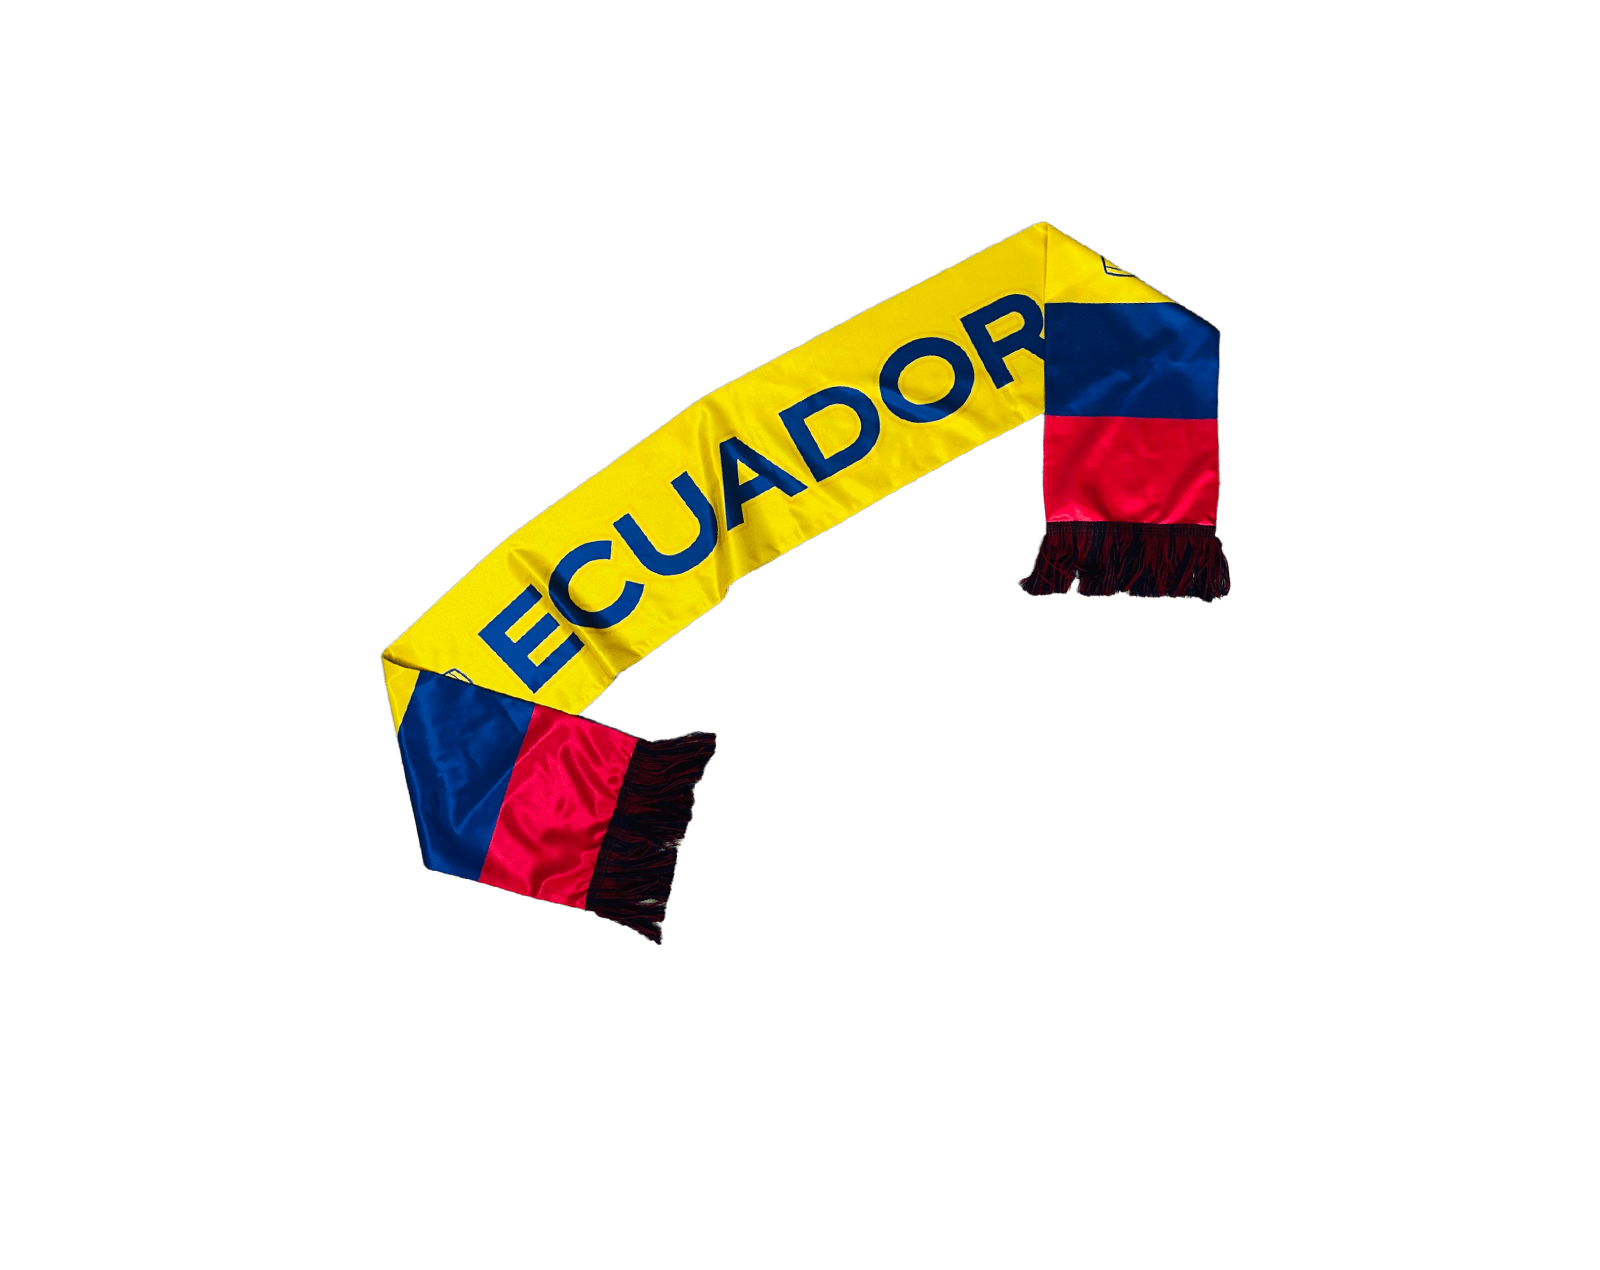 A scarf with Ecuador text